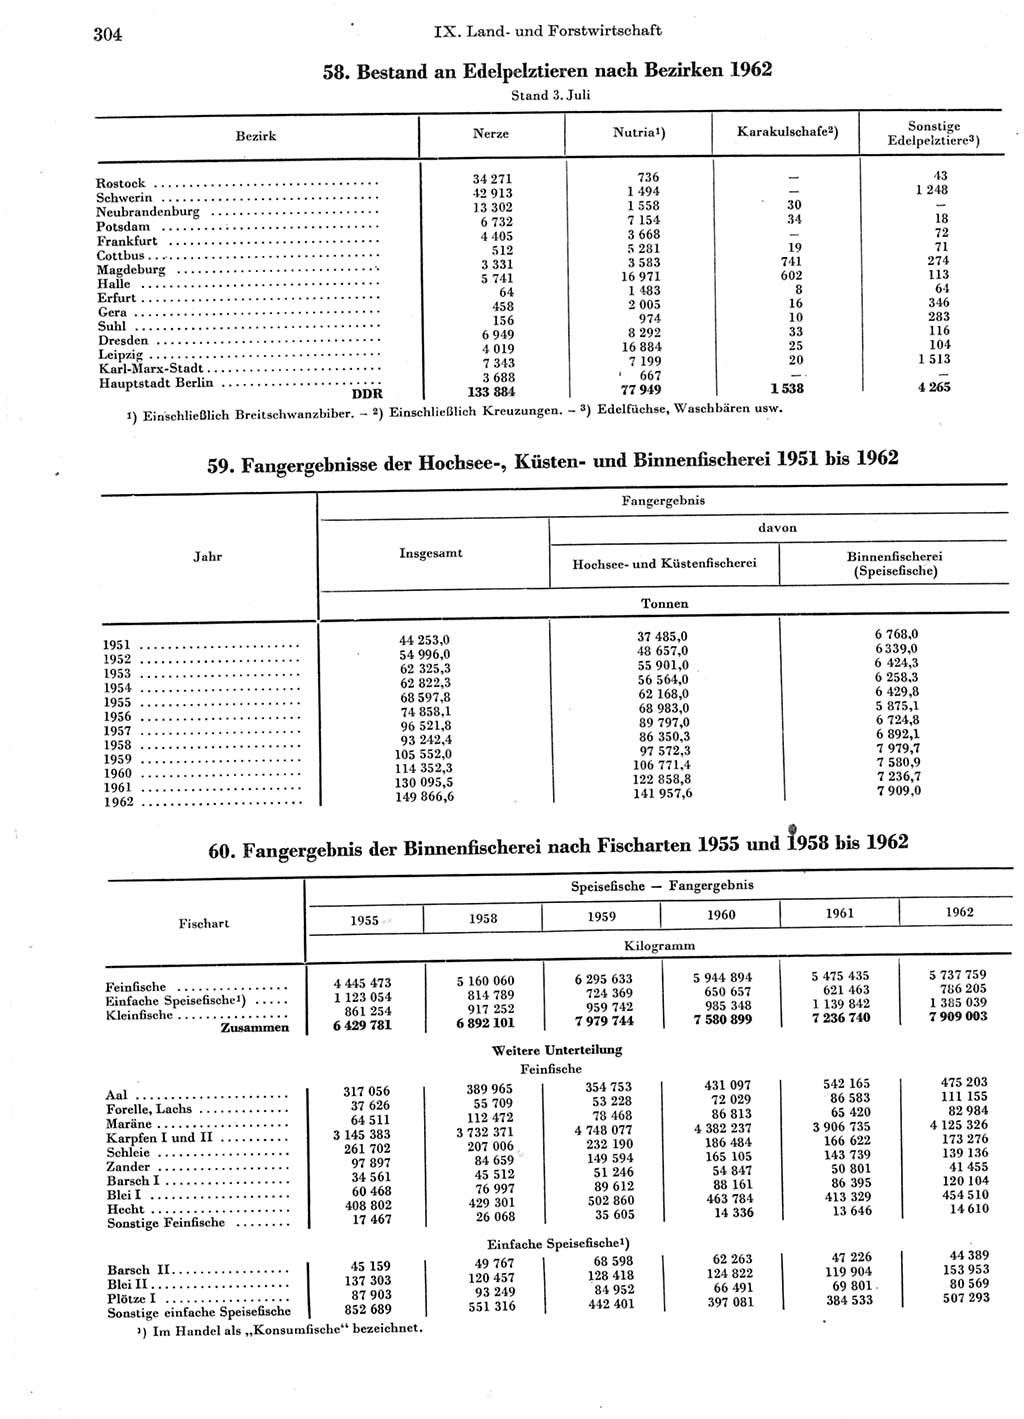 Statistisches Jahrbuch der Deutschen Demokratischen Republik (DDR) 1963, Seite 304 (Stat. Jb. DDR 1963, S. 304)